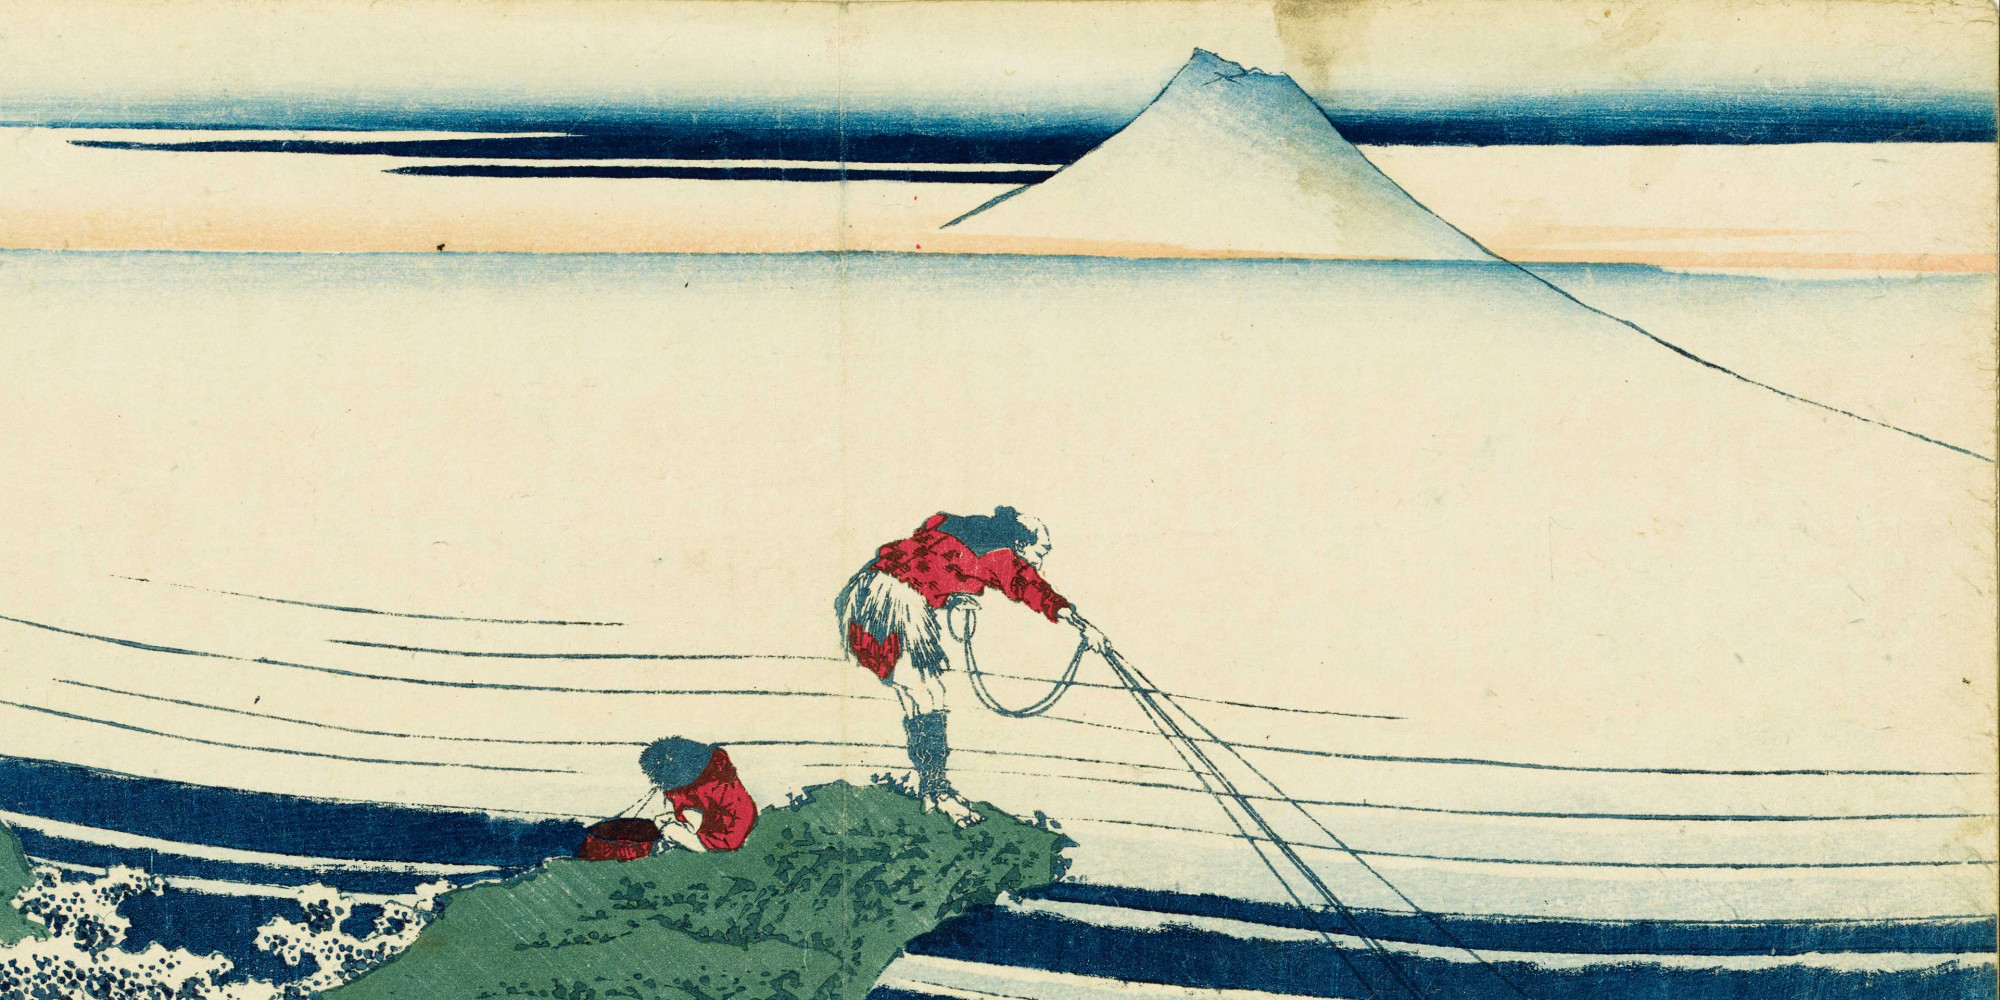 Vends éritable Estampe Japonaise De Hokusai Kajikazawa Dans La Province De  Kai Dit Le Pêcheur - paris-vente-veritables-estampes-objets-art-japon .overblog.com